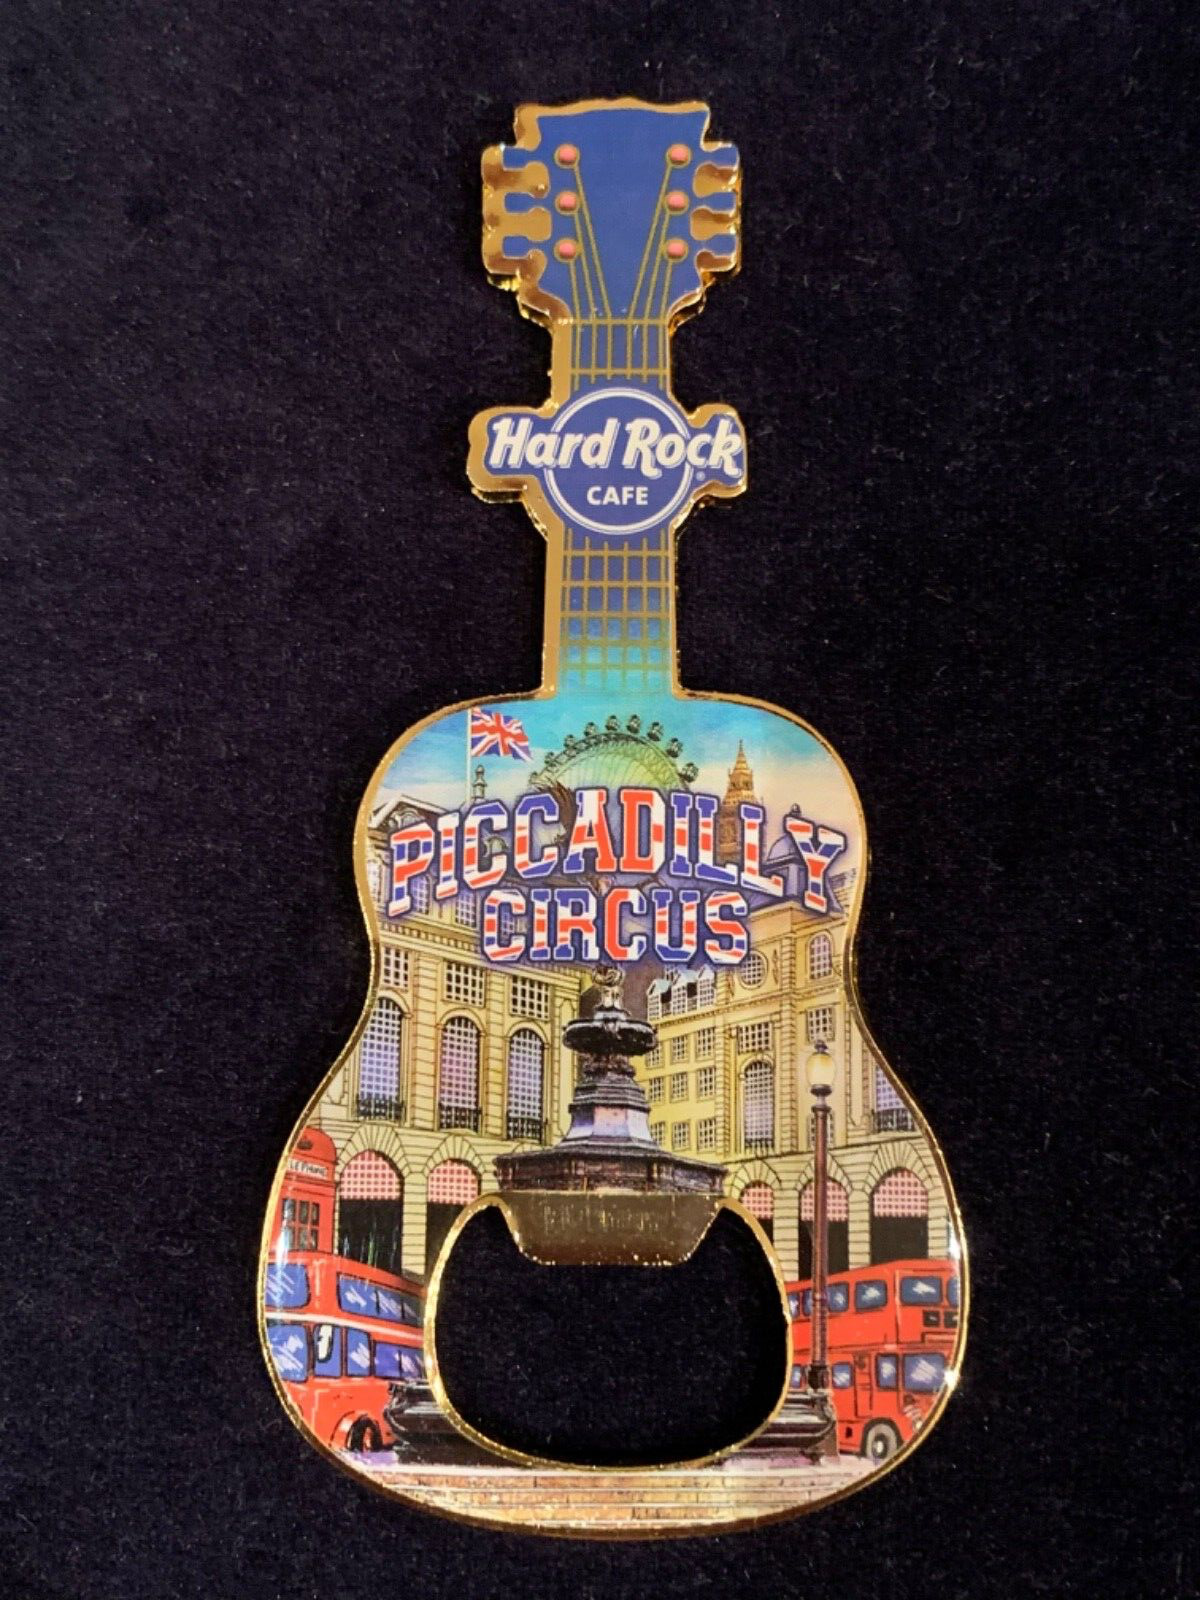 Hard Rock Cafe PICCADILLY CIRCUS - V20 City Bottle Opener Guitar Magnet.